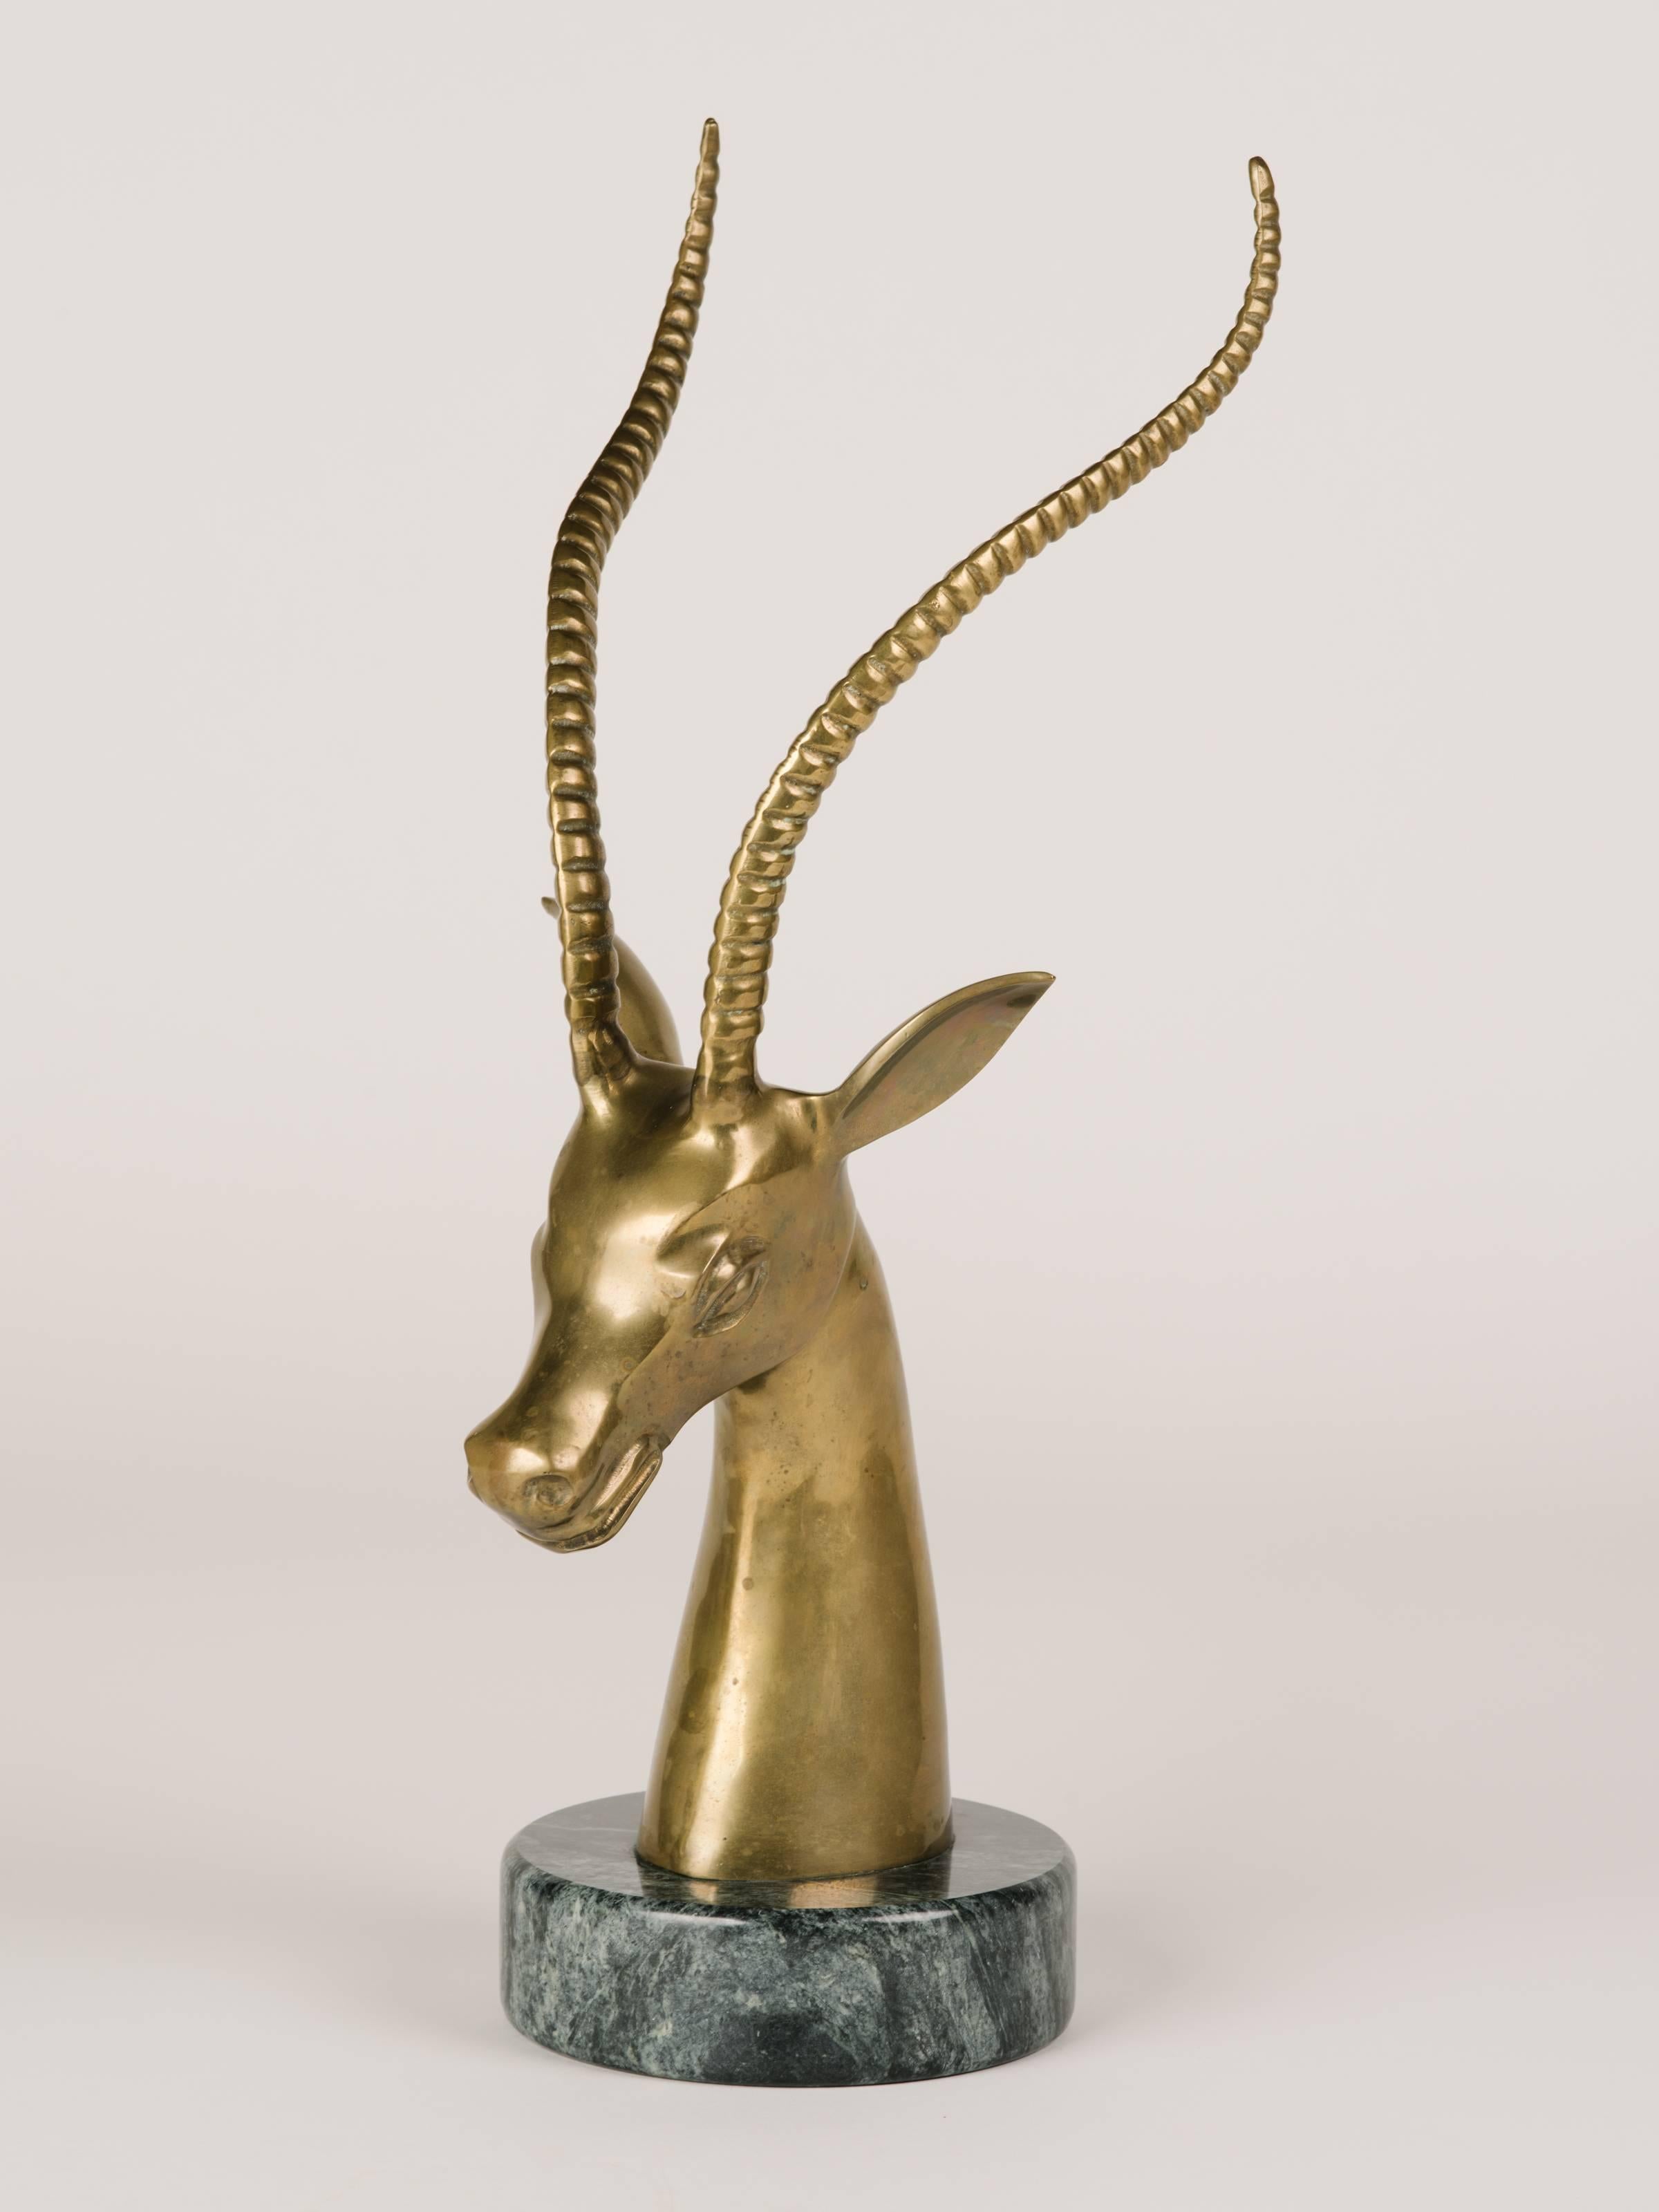 modern brass sculpture